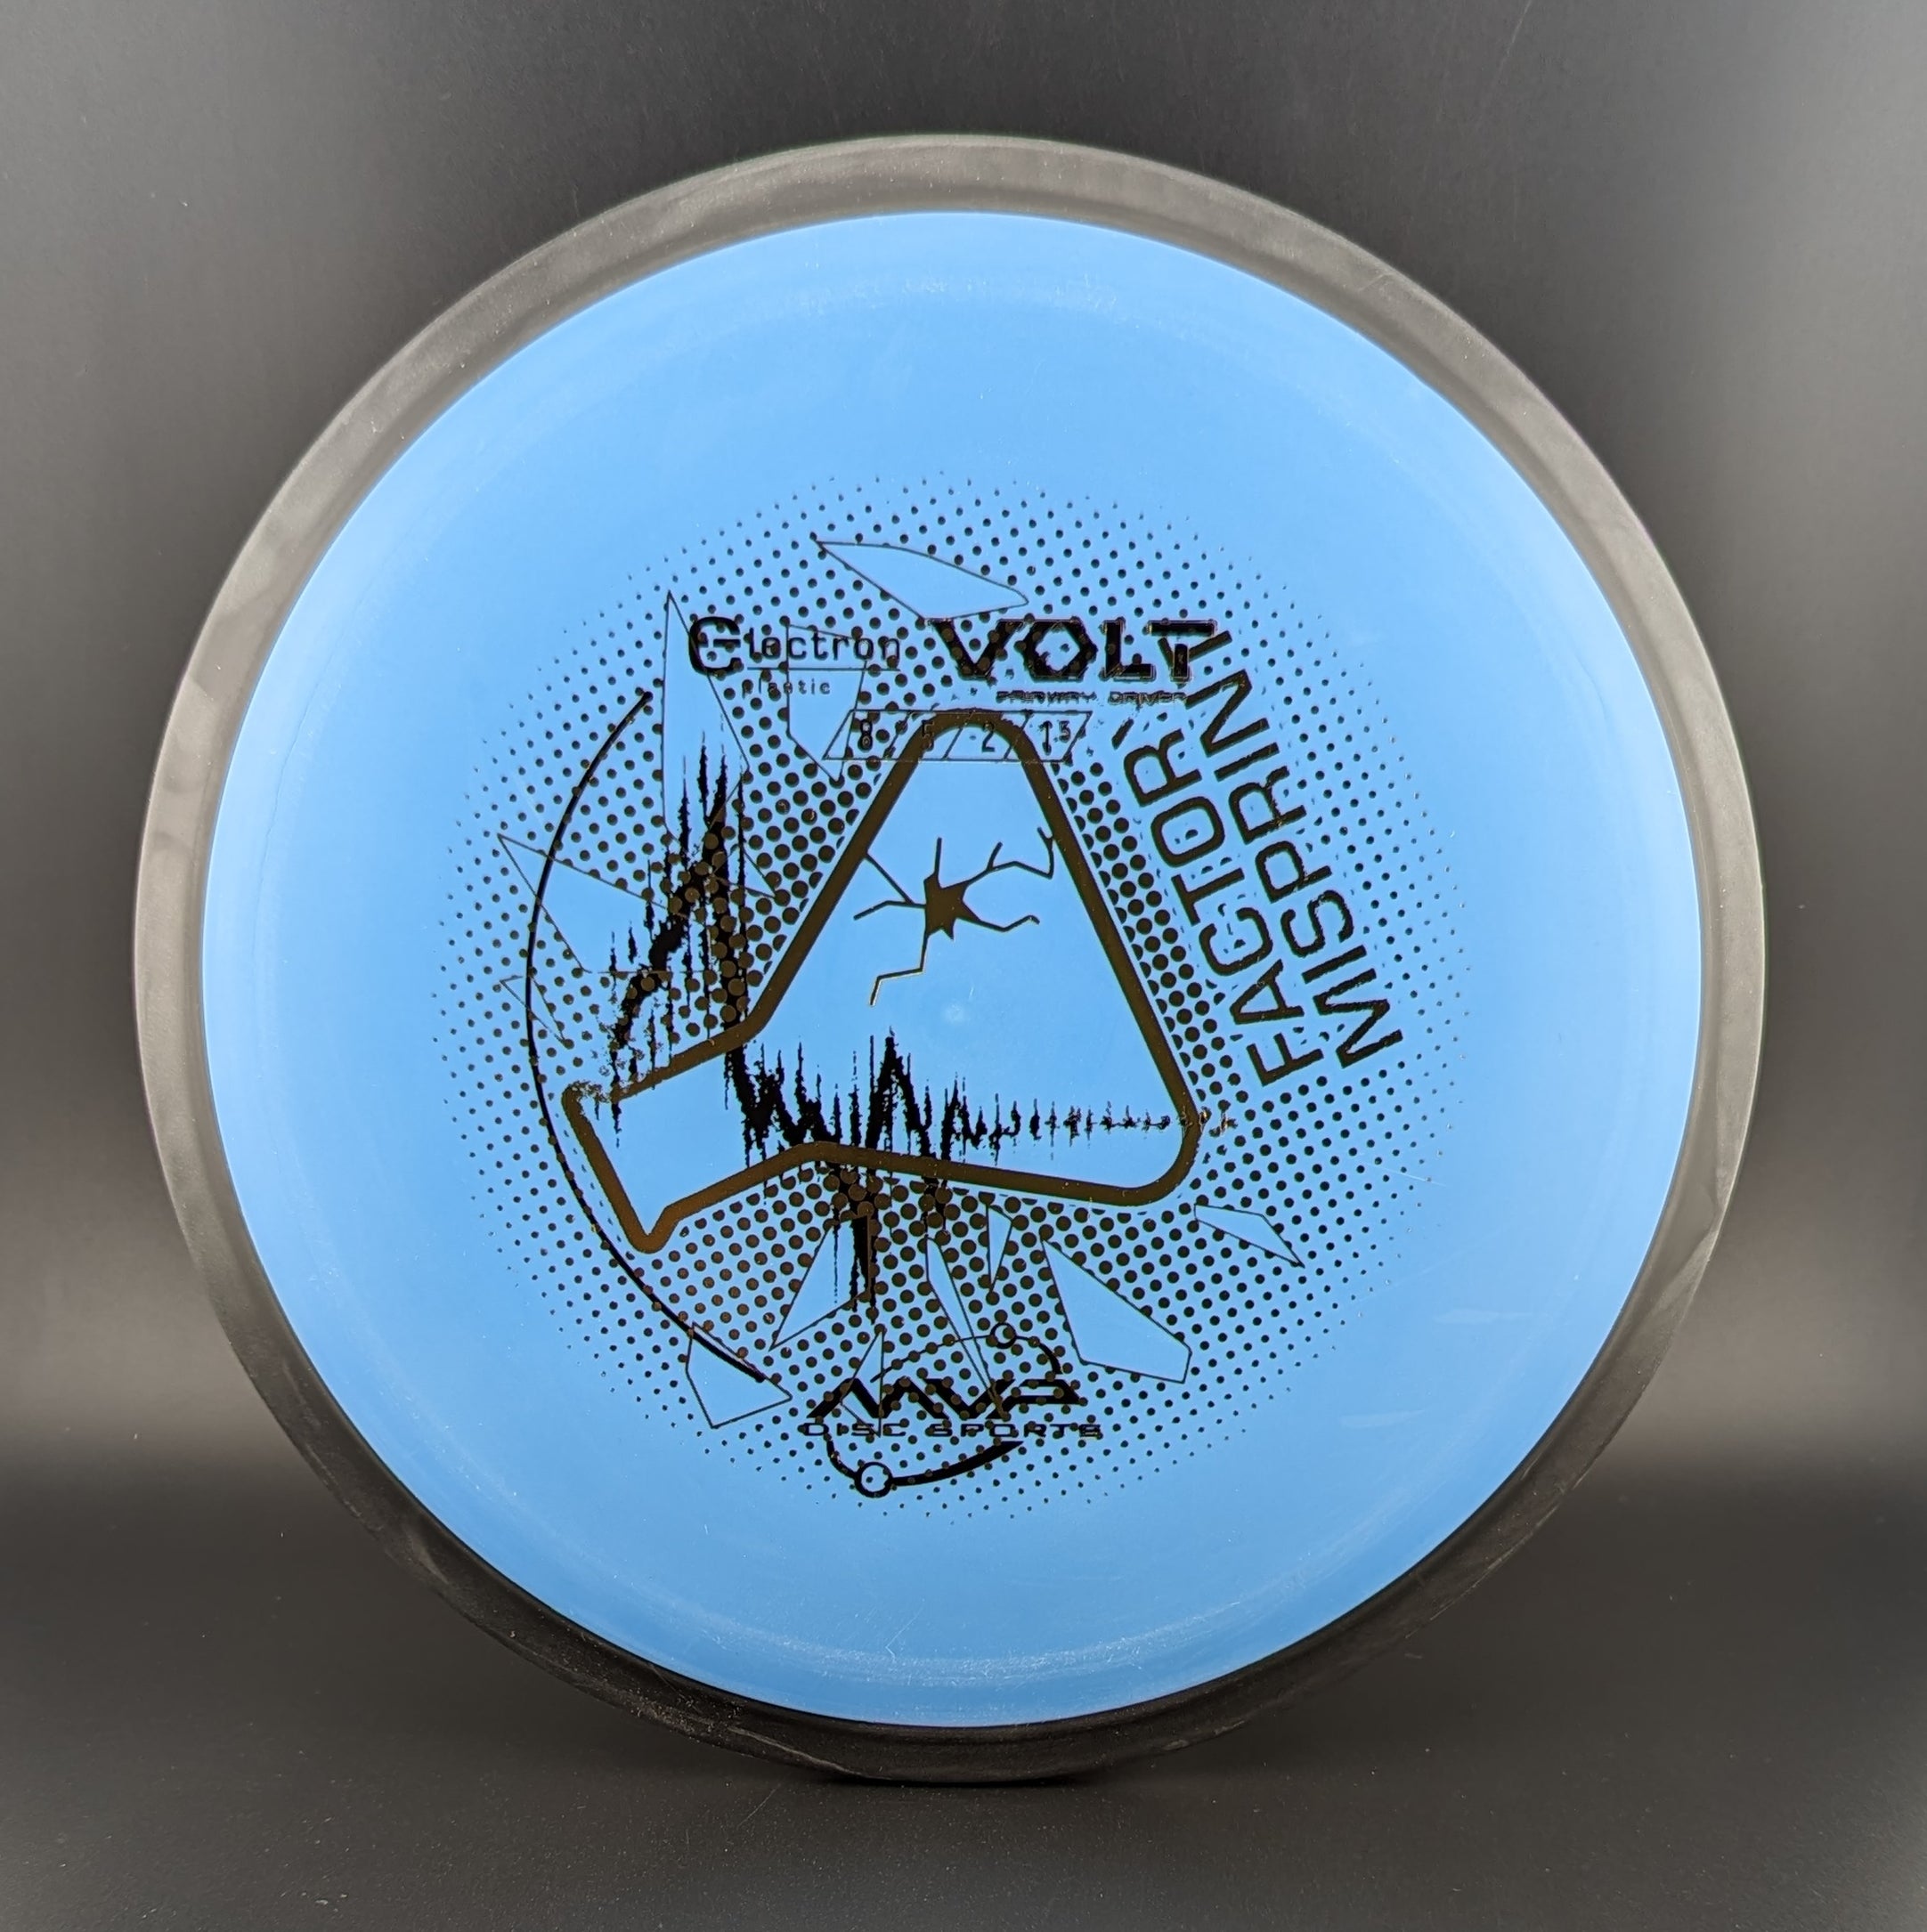 MVP Electron Volt Lab Second